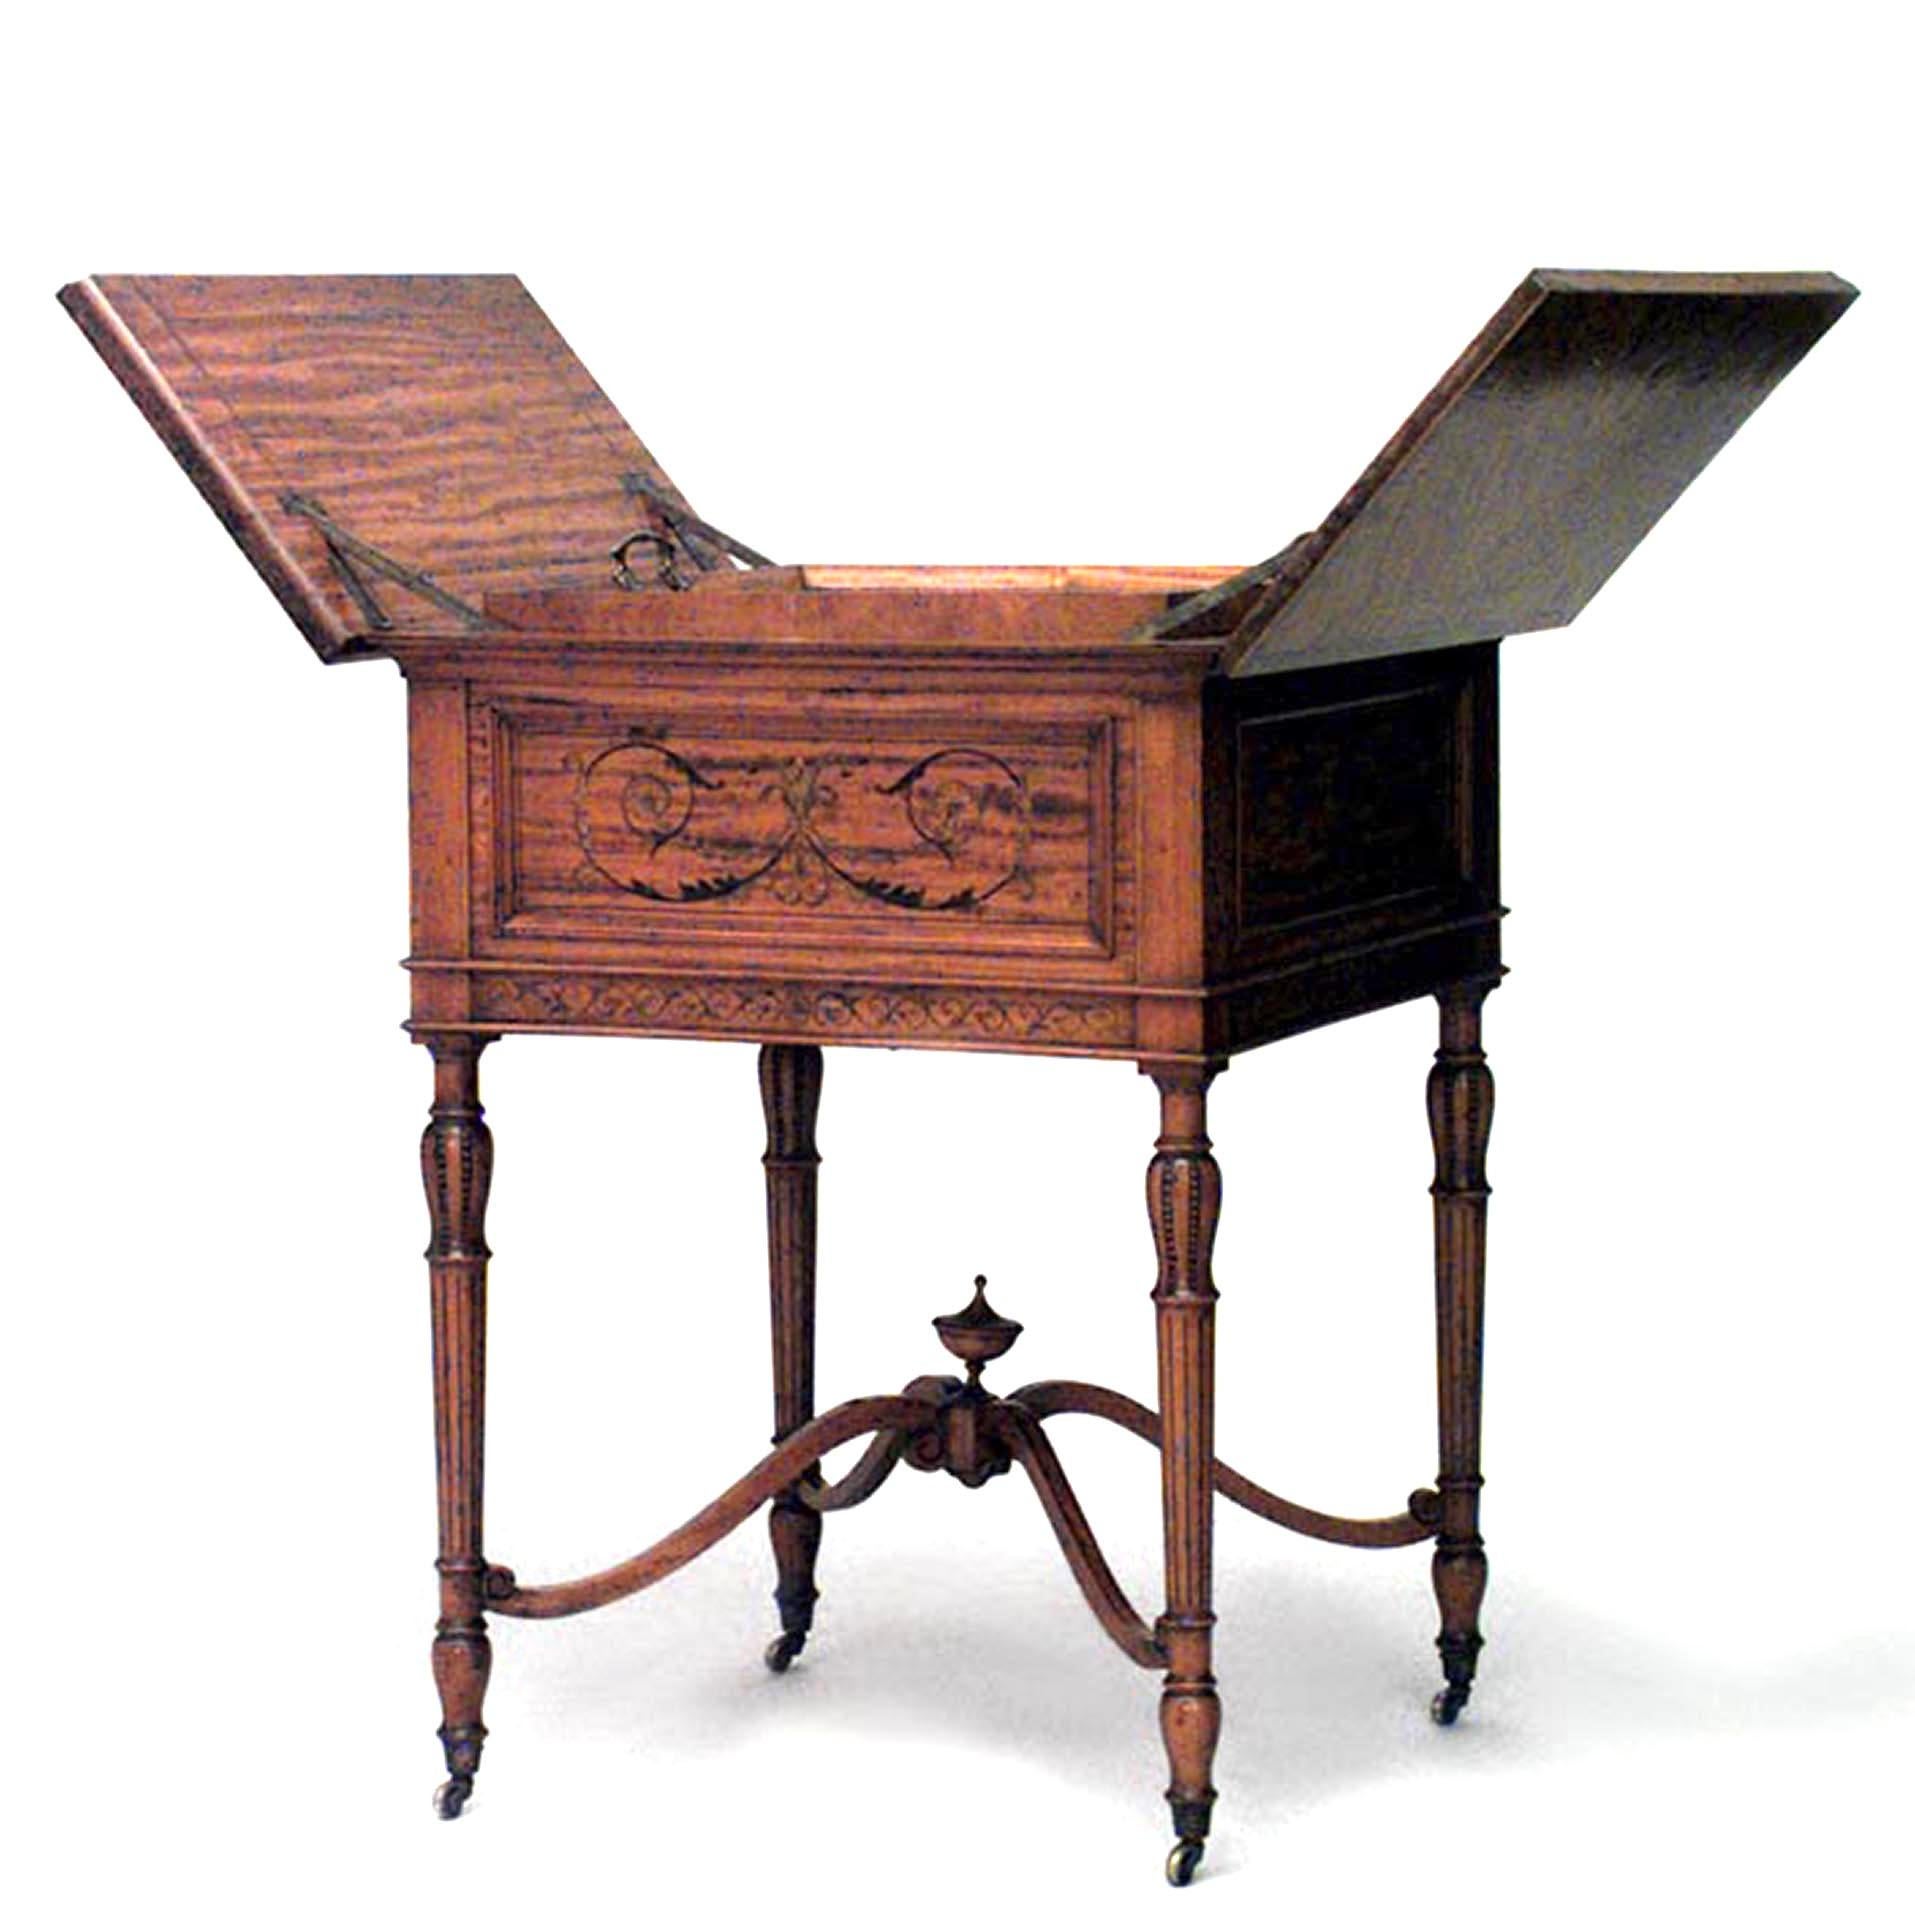 Table d'appoint carrée de style Sheraton (XIXe siècle) en bois de satin et marqueterie, à plateau rabattable mécaniquement découvrant un plateau carré et une traverse à fleuron.
